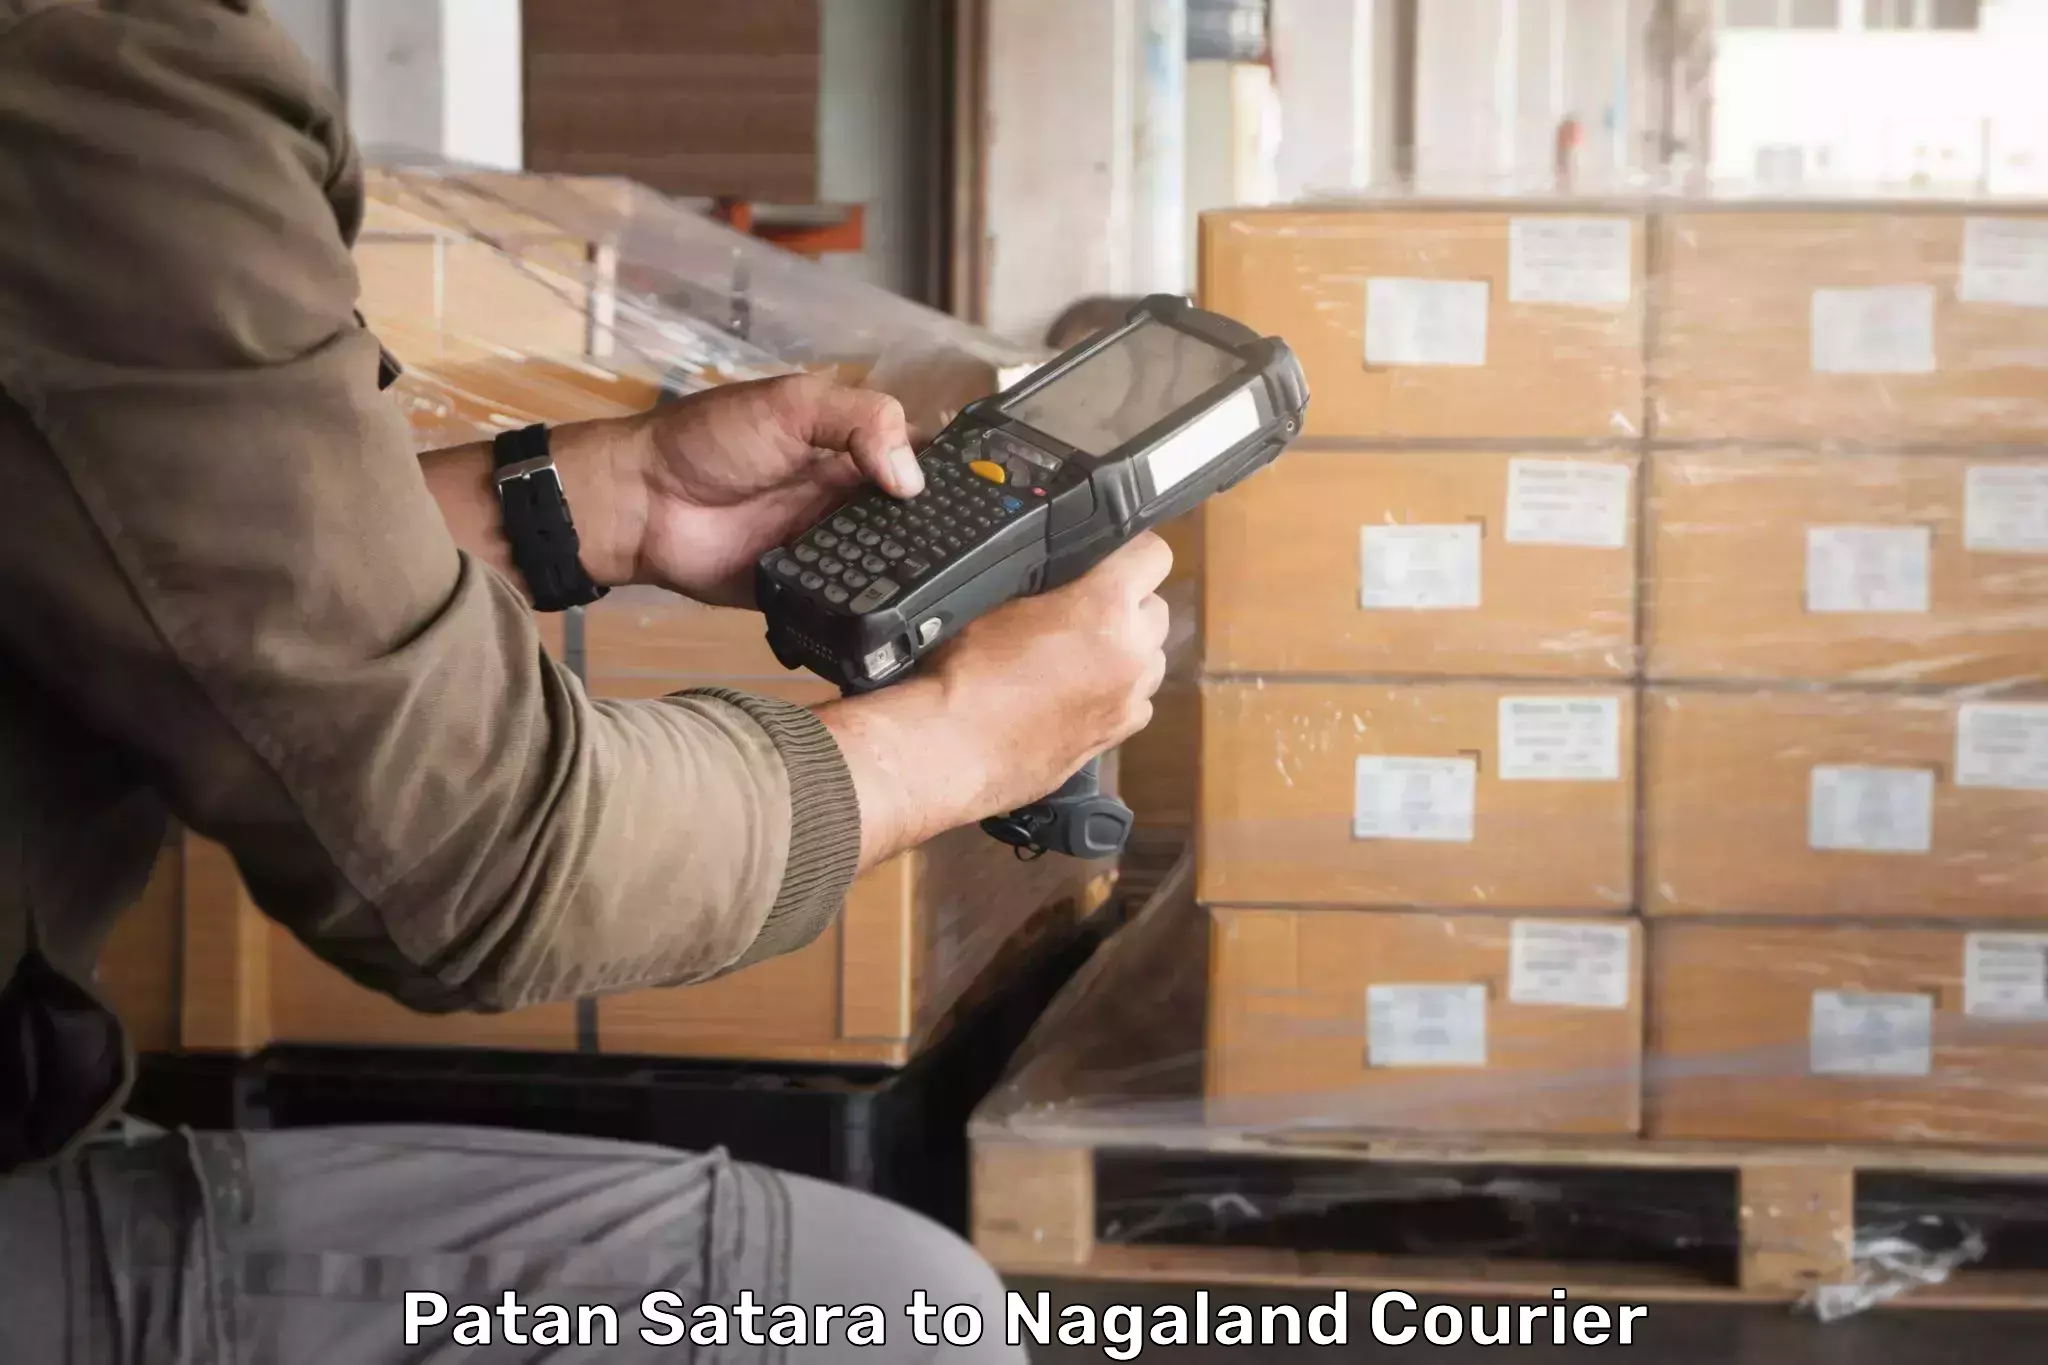 Nationwide parcel services Patan Satara to NIT Nagaland